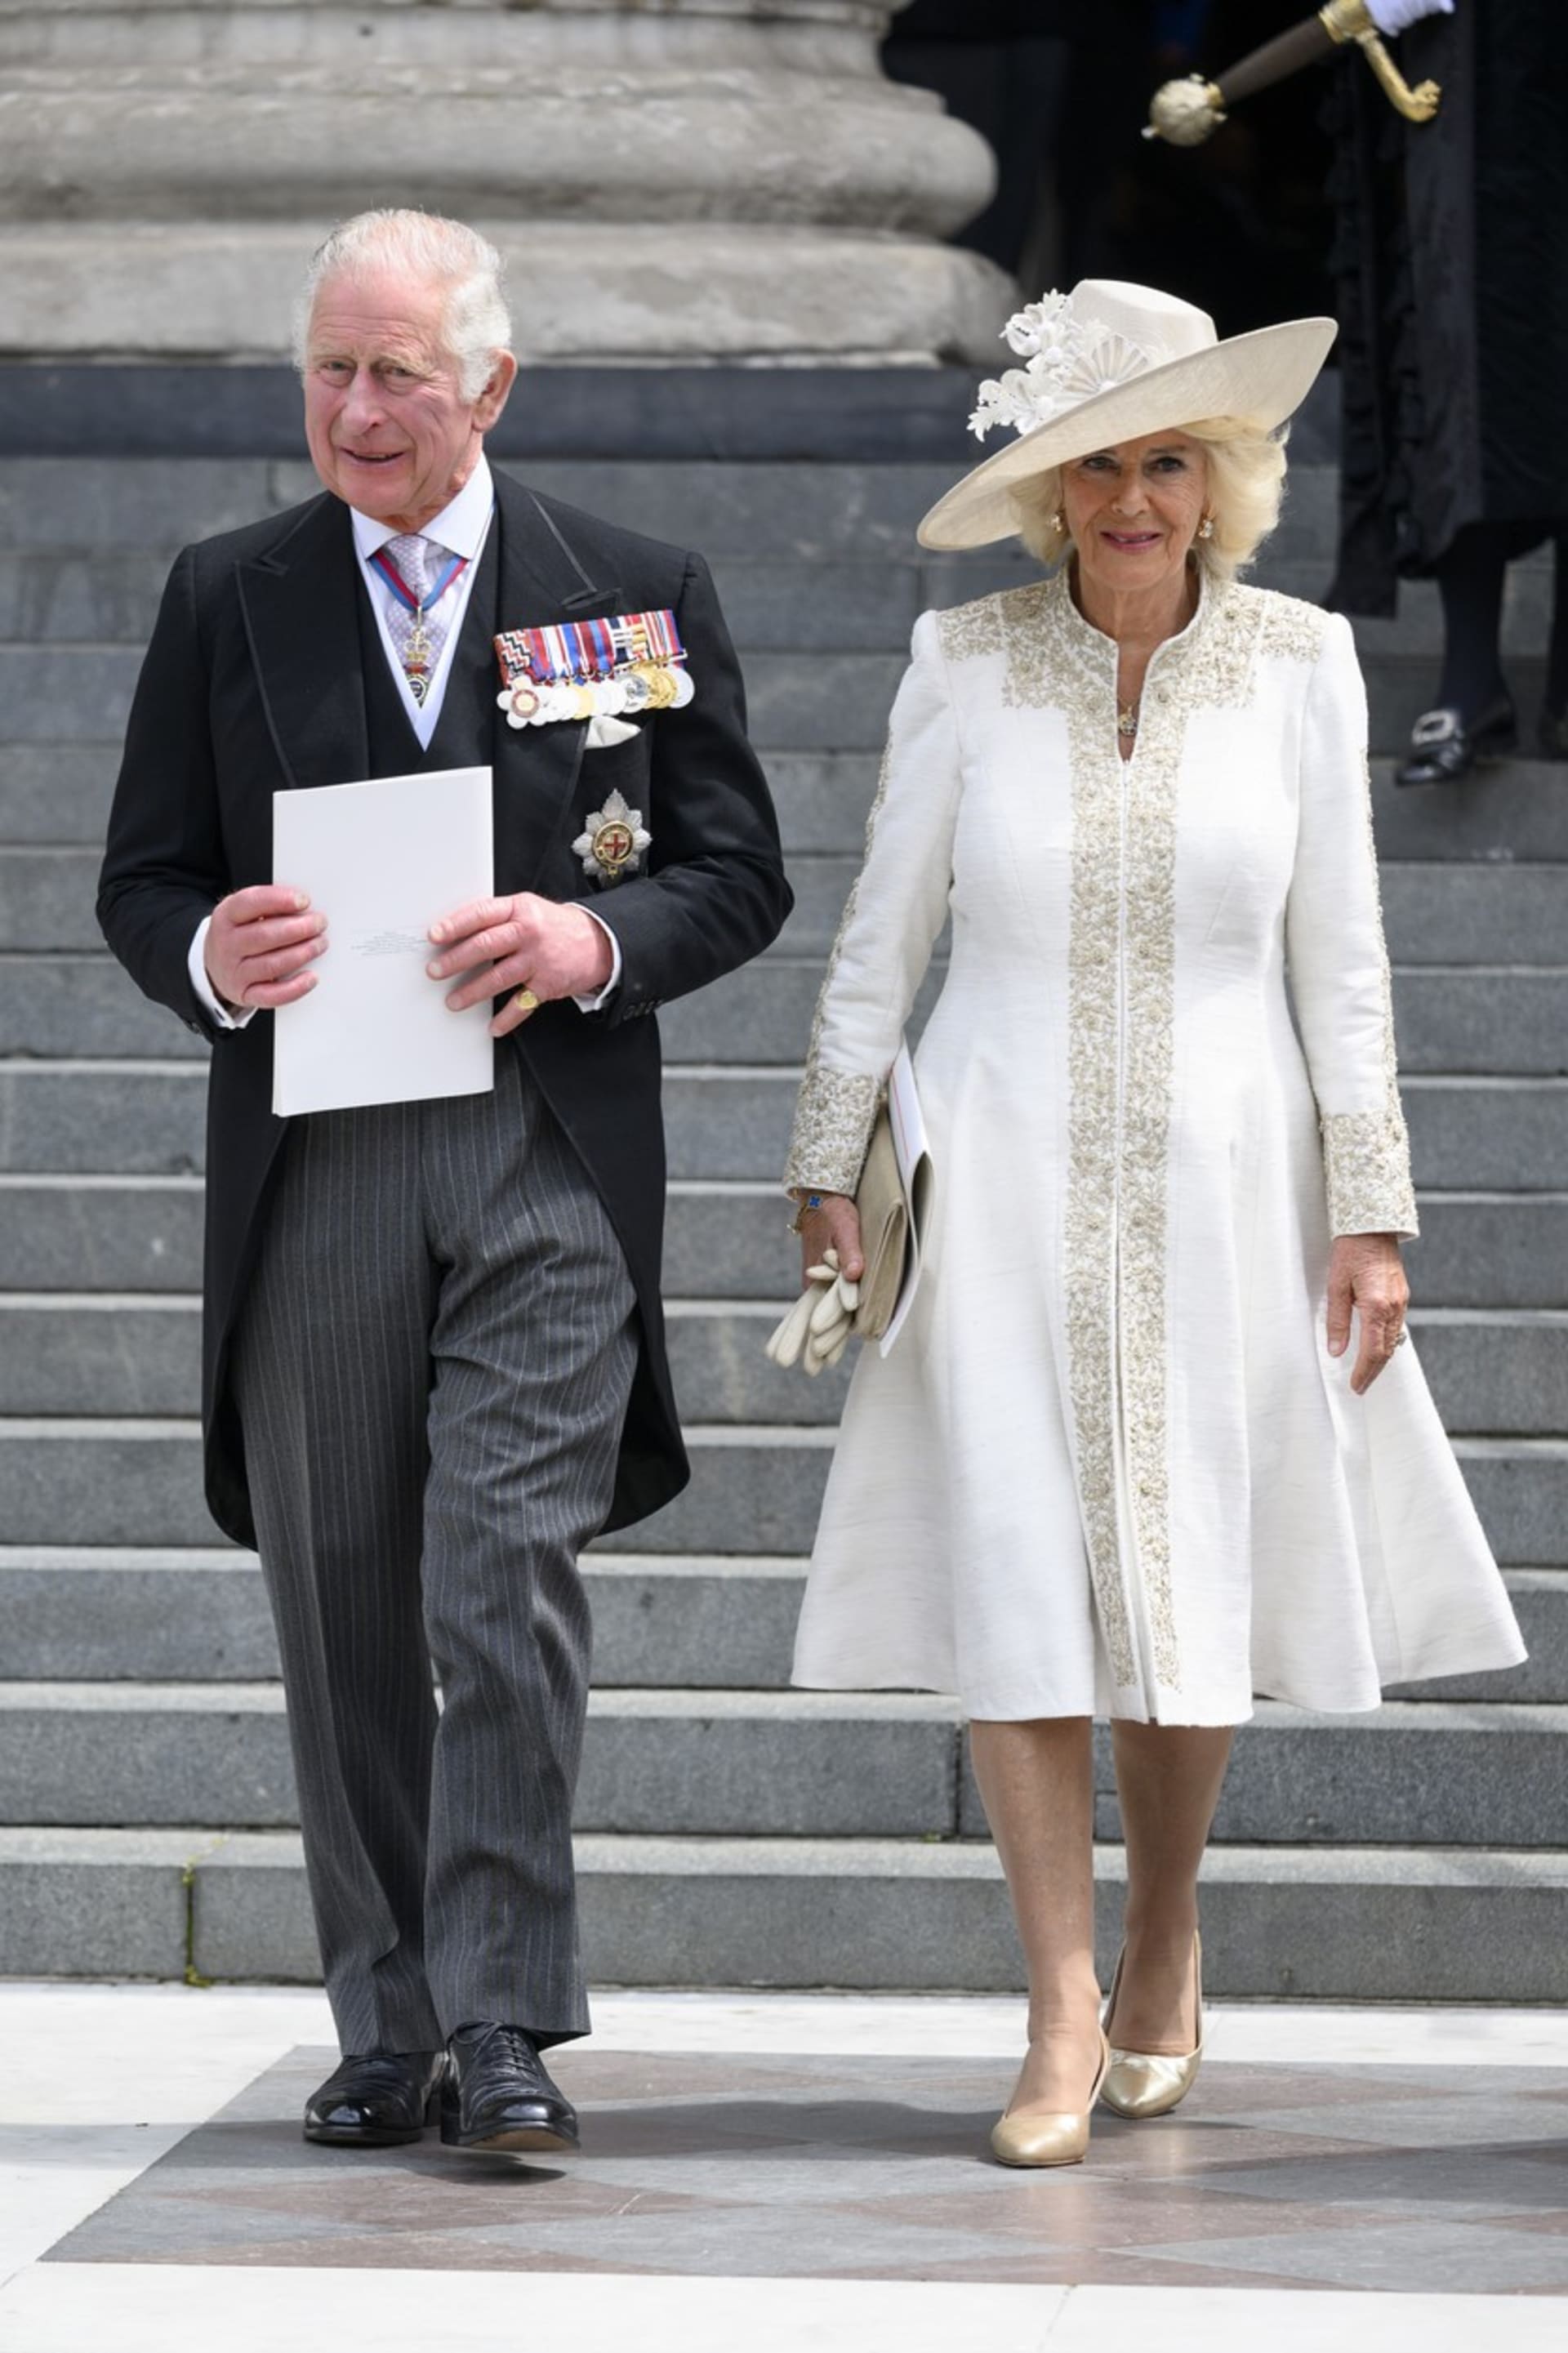 Princ Charles je první v nástupnické linii po Alžbětě II. Na snímku po boku Camilly, vévodkyně z Cornwallu.